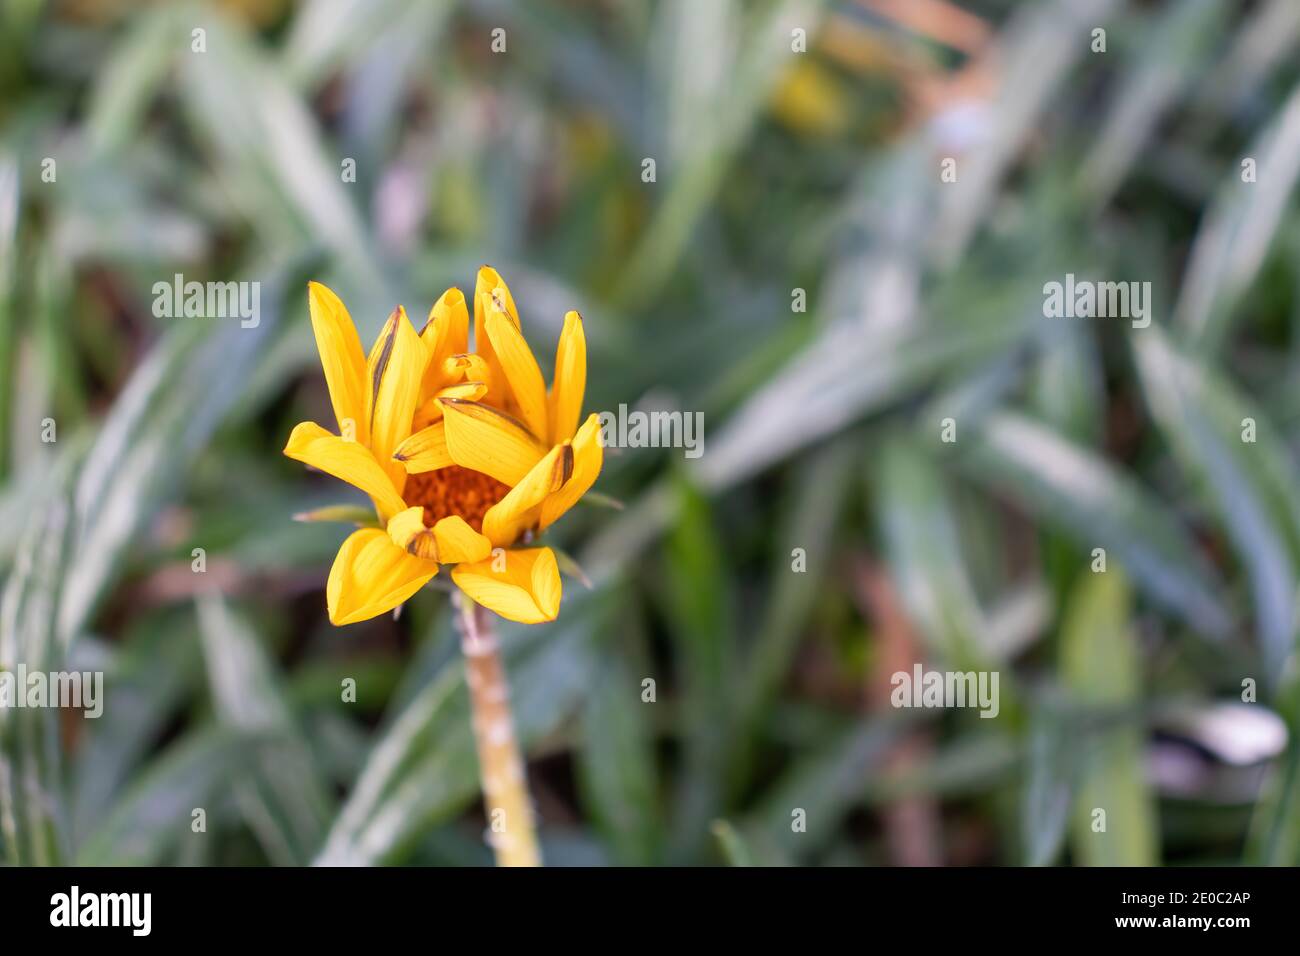 Faltige gelbe Blütenblätter blockieren den Blick auf das Stigma, das für Bestäubung verwendet wird Stockfoto